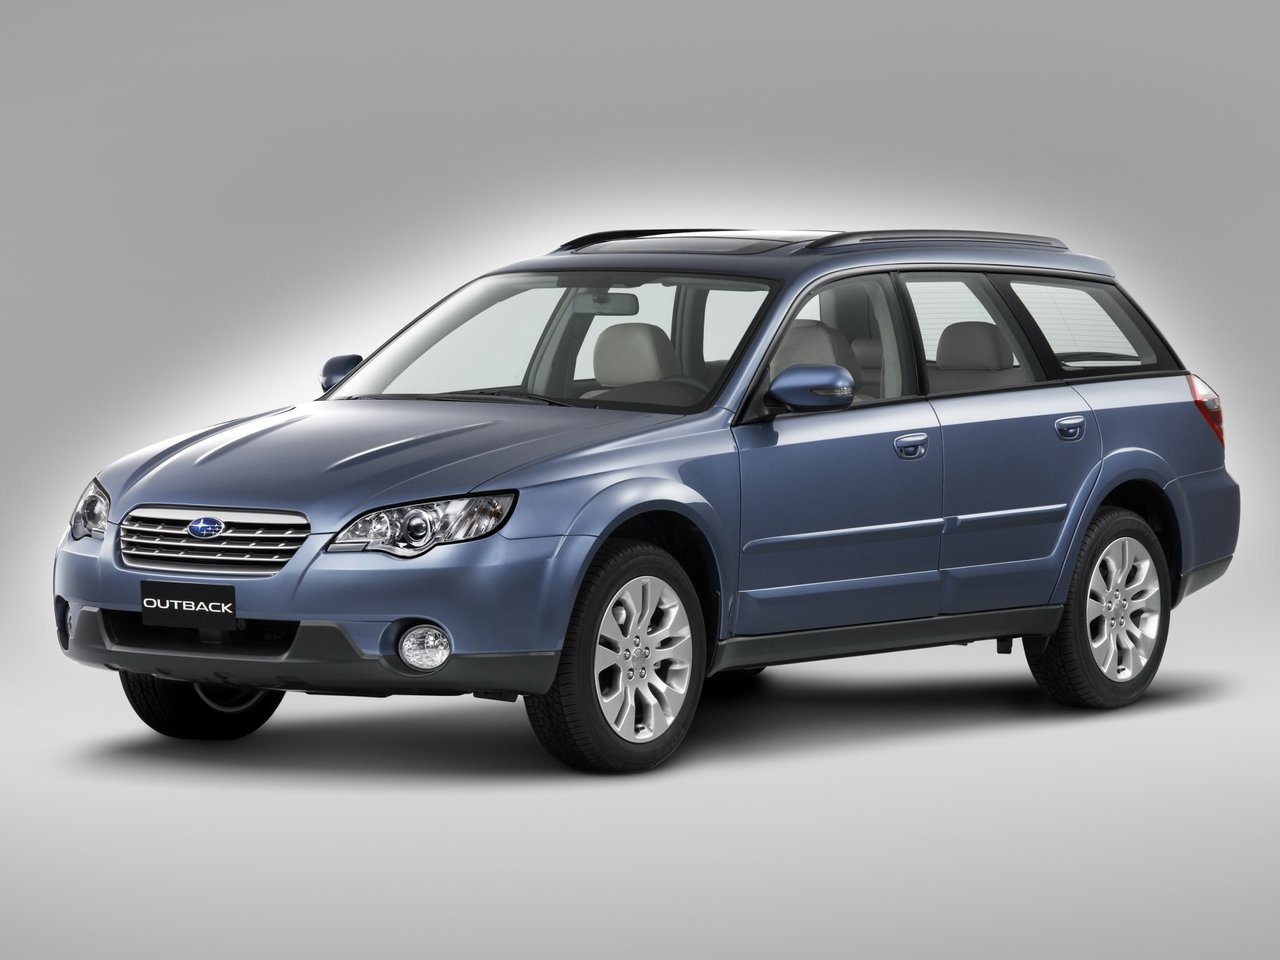 Расход газа трёх комплектаций универсала пять дверей Subaru Outback. Разница стоимости заправки газом и бензином. Автономный пробег до и после установки ГБО.